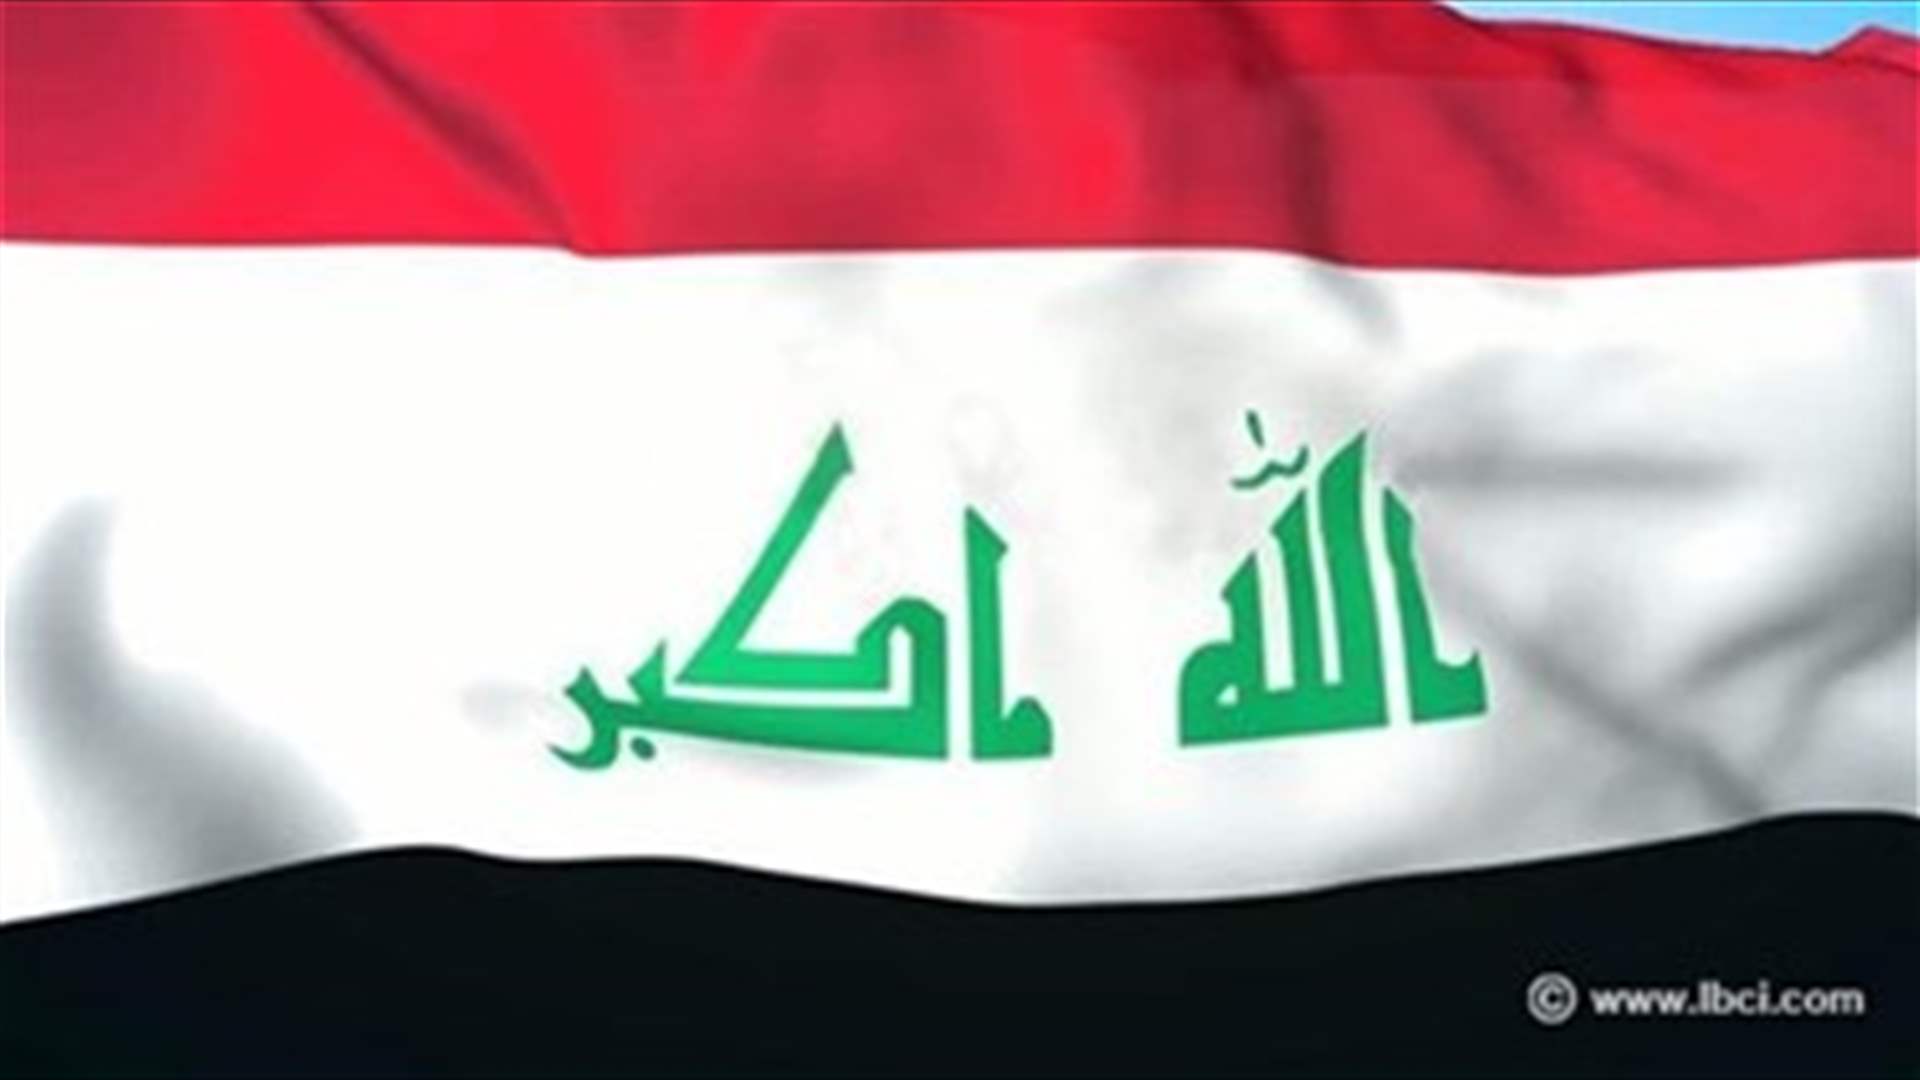 العراق يطلق الإنتاج في مصفاة جديدة لتكرير النفط لتقليص واردات الوقود